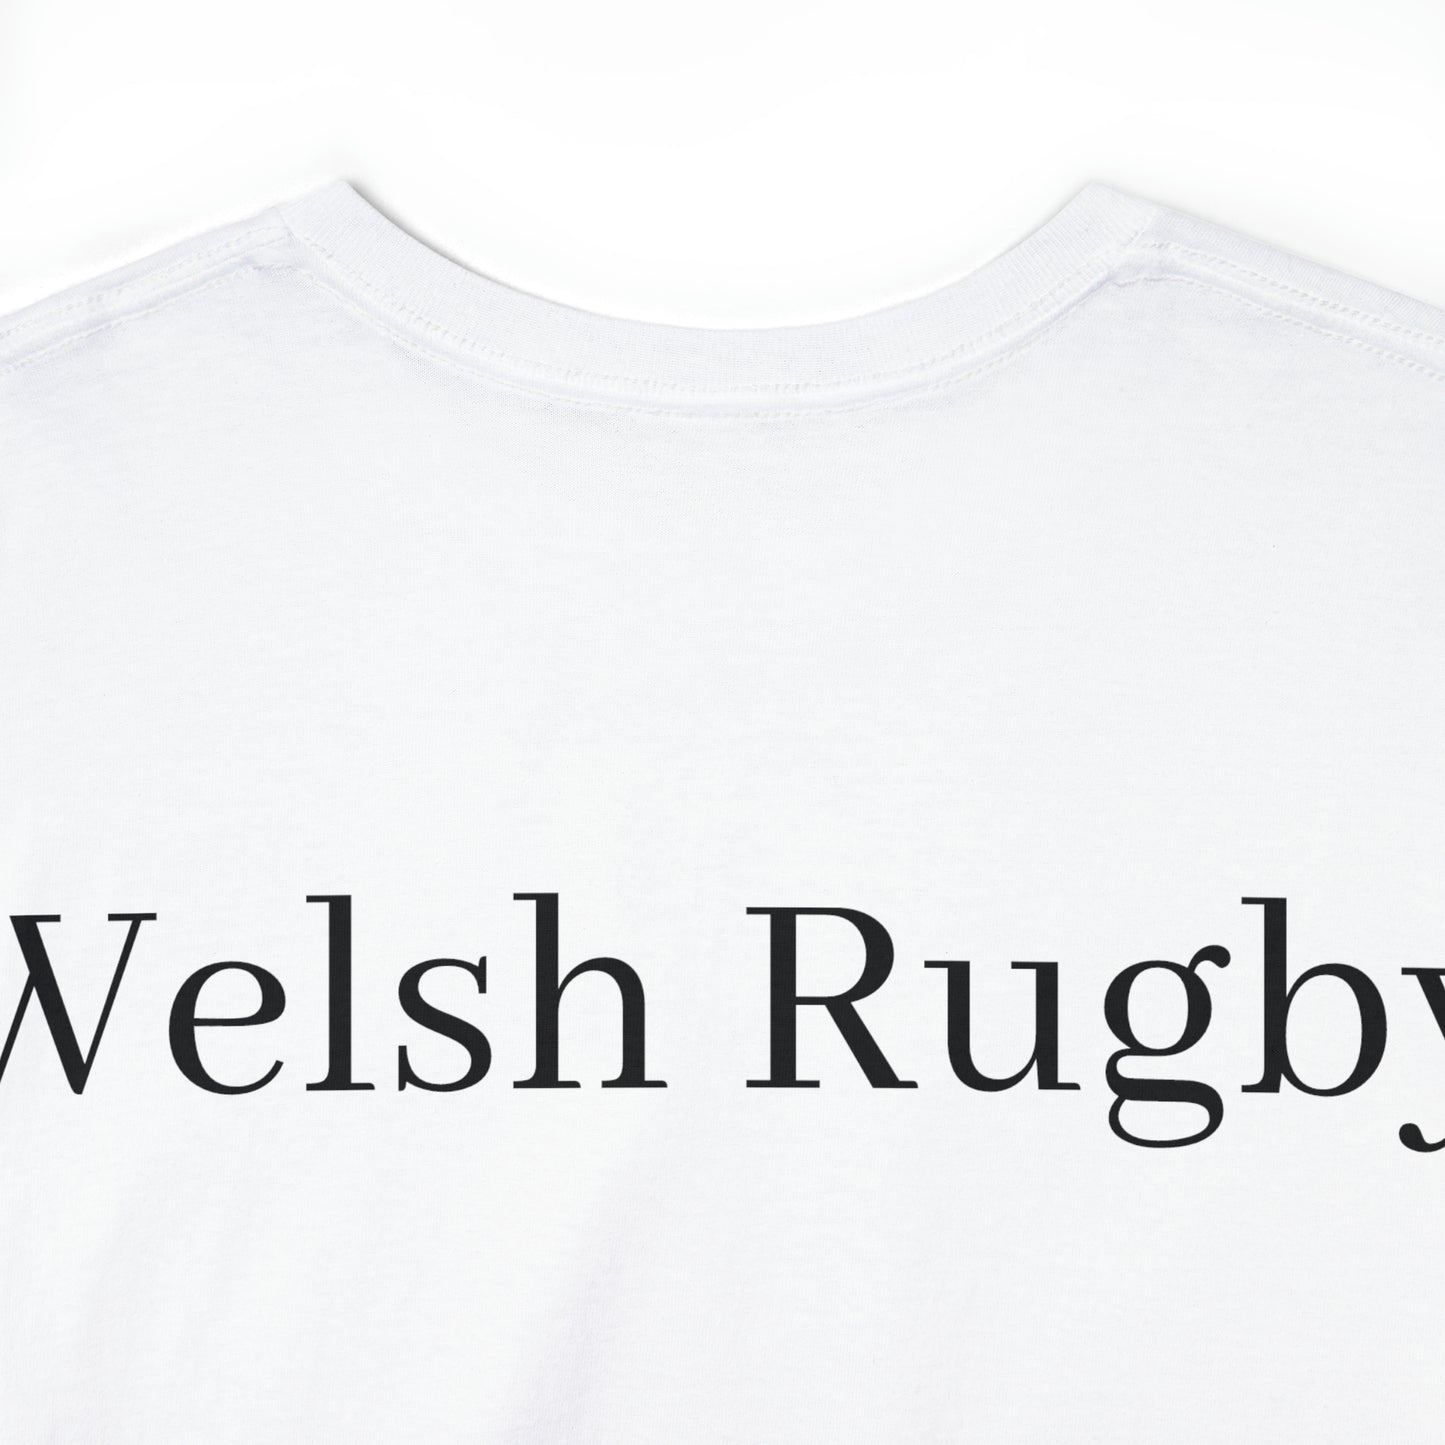 Ready Wales - light shirts